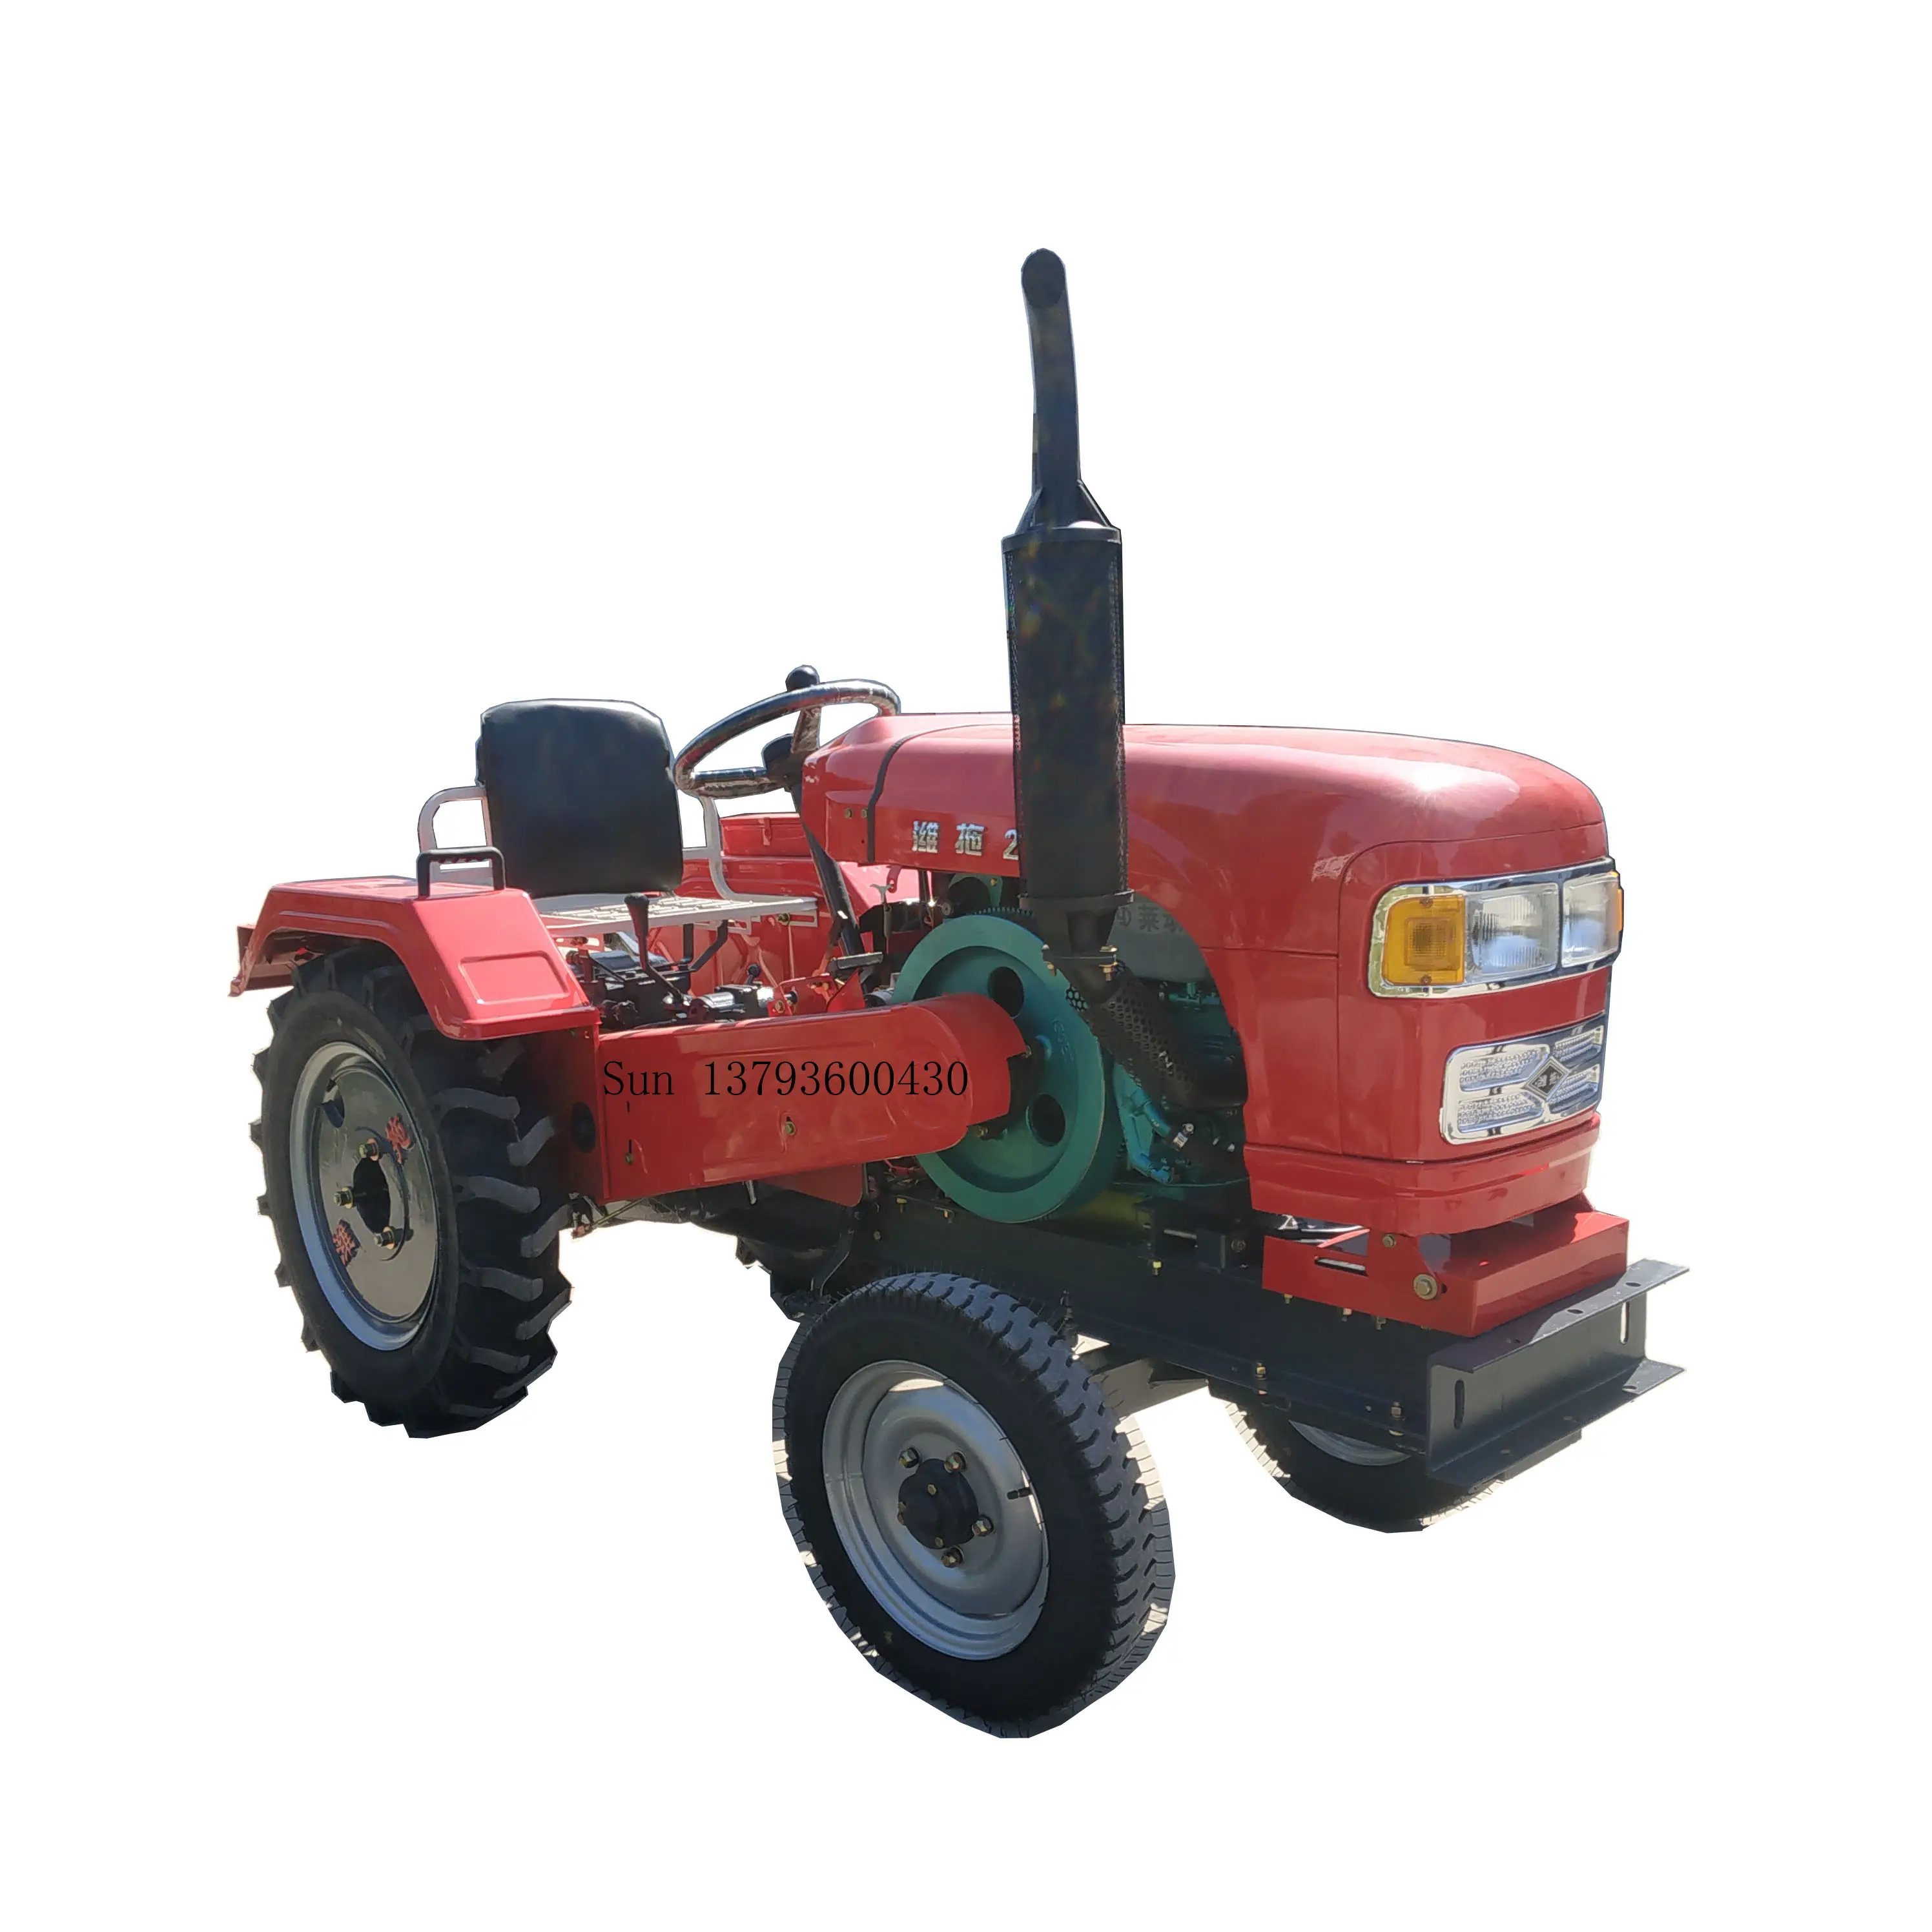 24HP 2 rad stick gürtel übertragung landwirtschaft landwirtschaft traktor bauernhof traktor